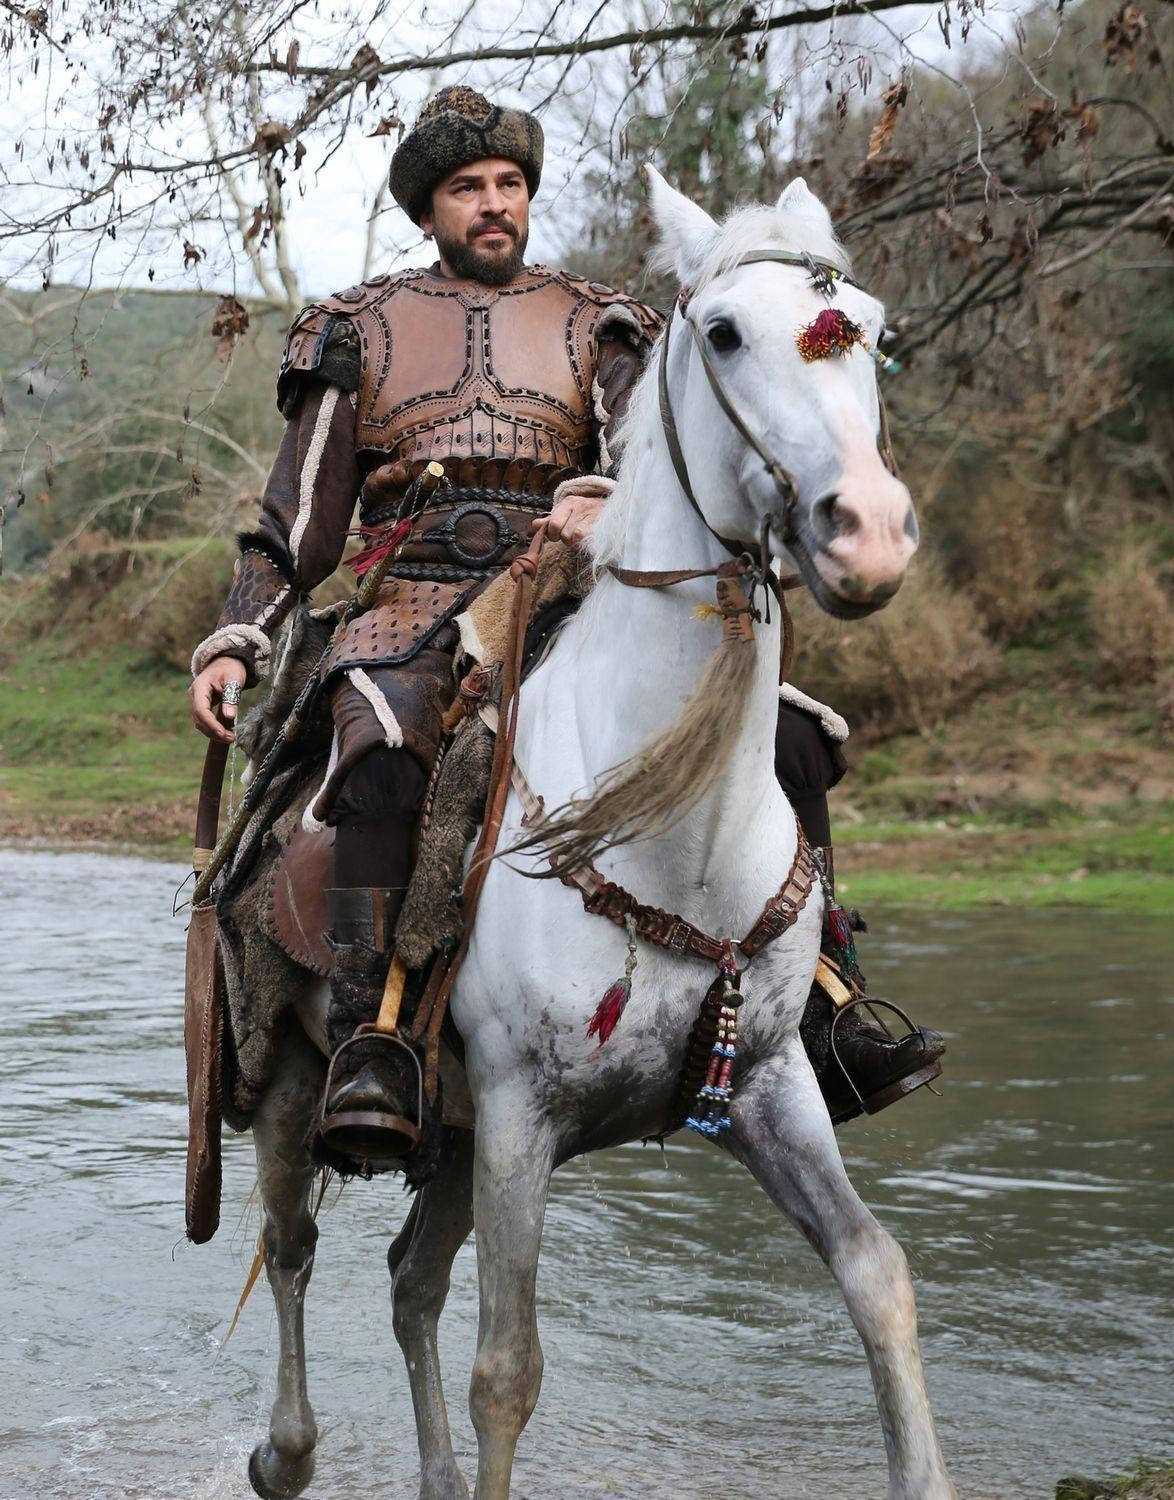 Ertugrul Gazi Riding Horse On River Background